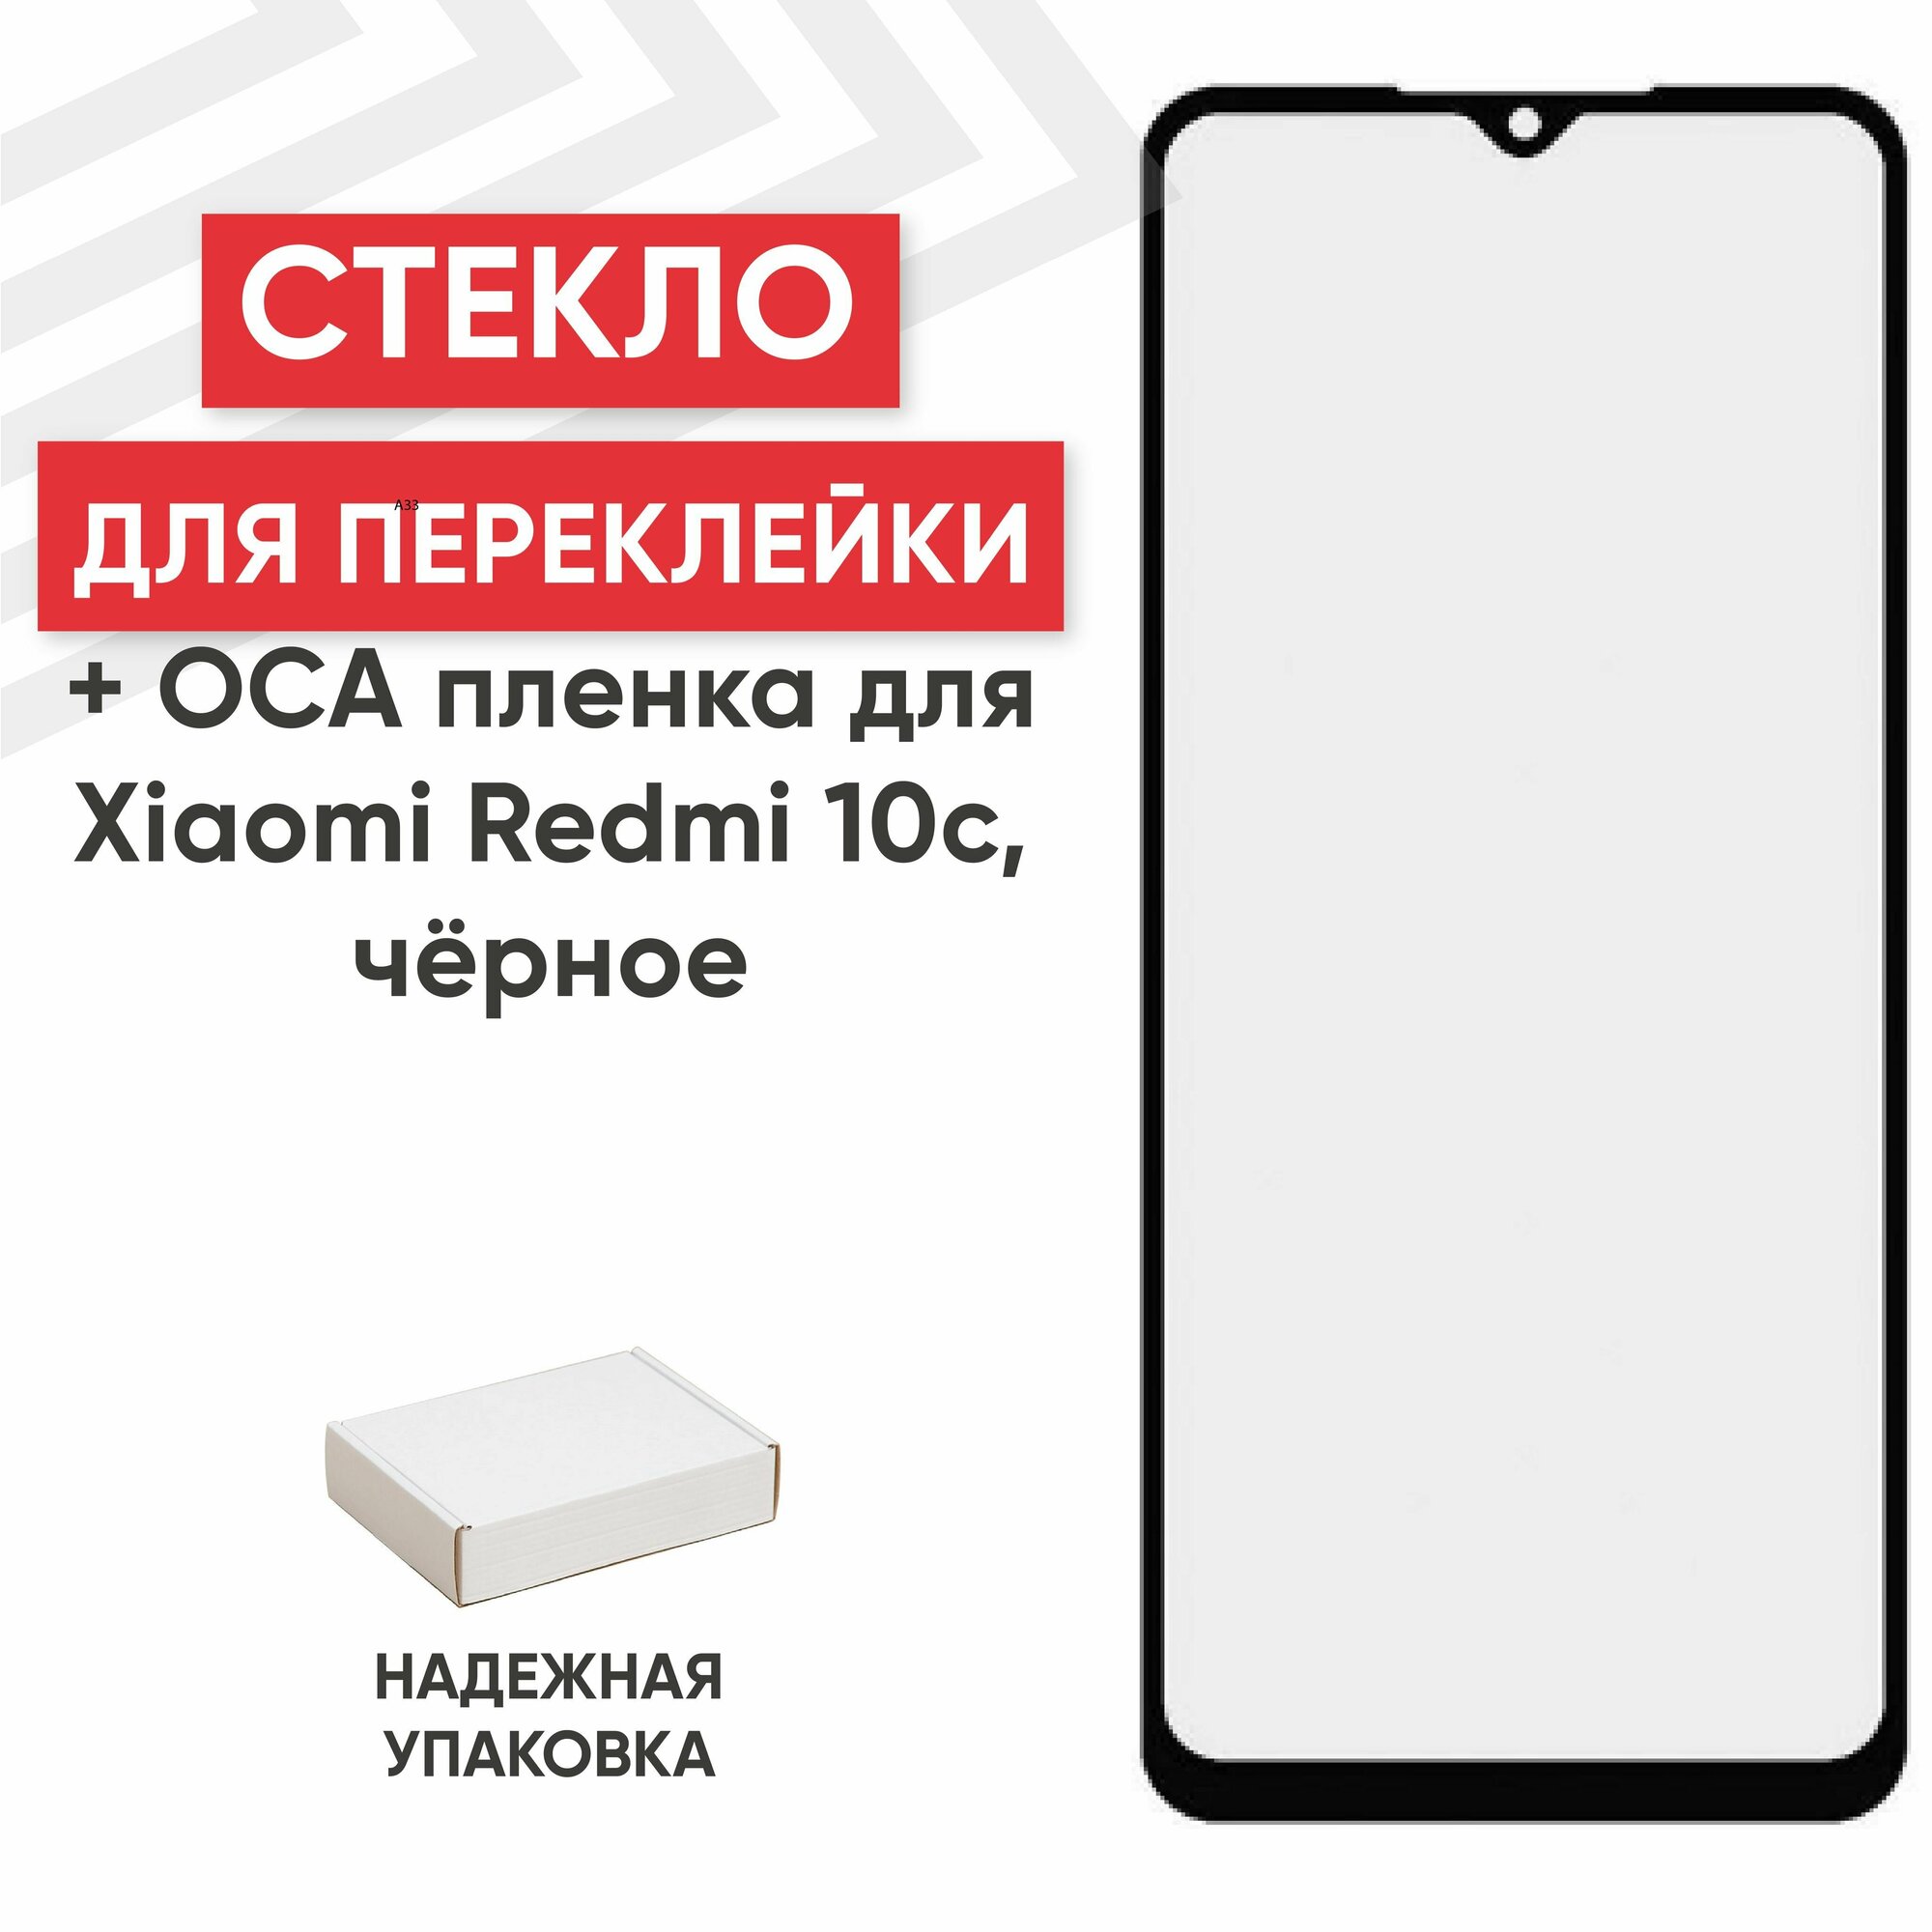 Стекло переклейки дисплея c OCA пленкой для мобильного телефона (смартфона) Xiaomi Redmi 10c, черное